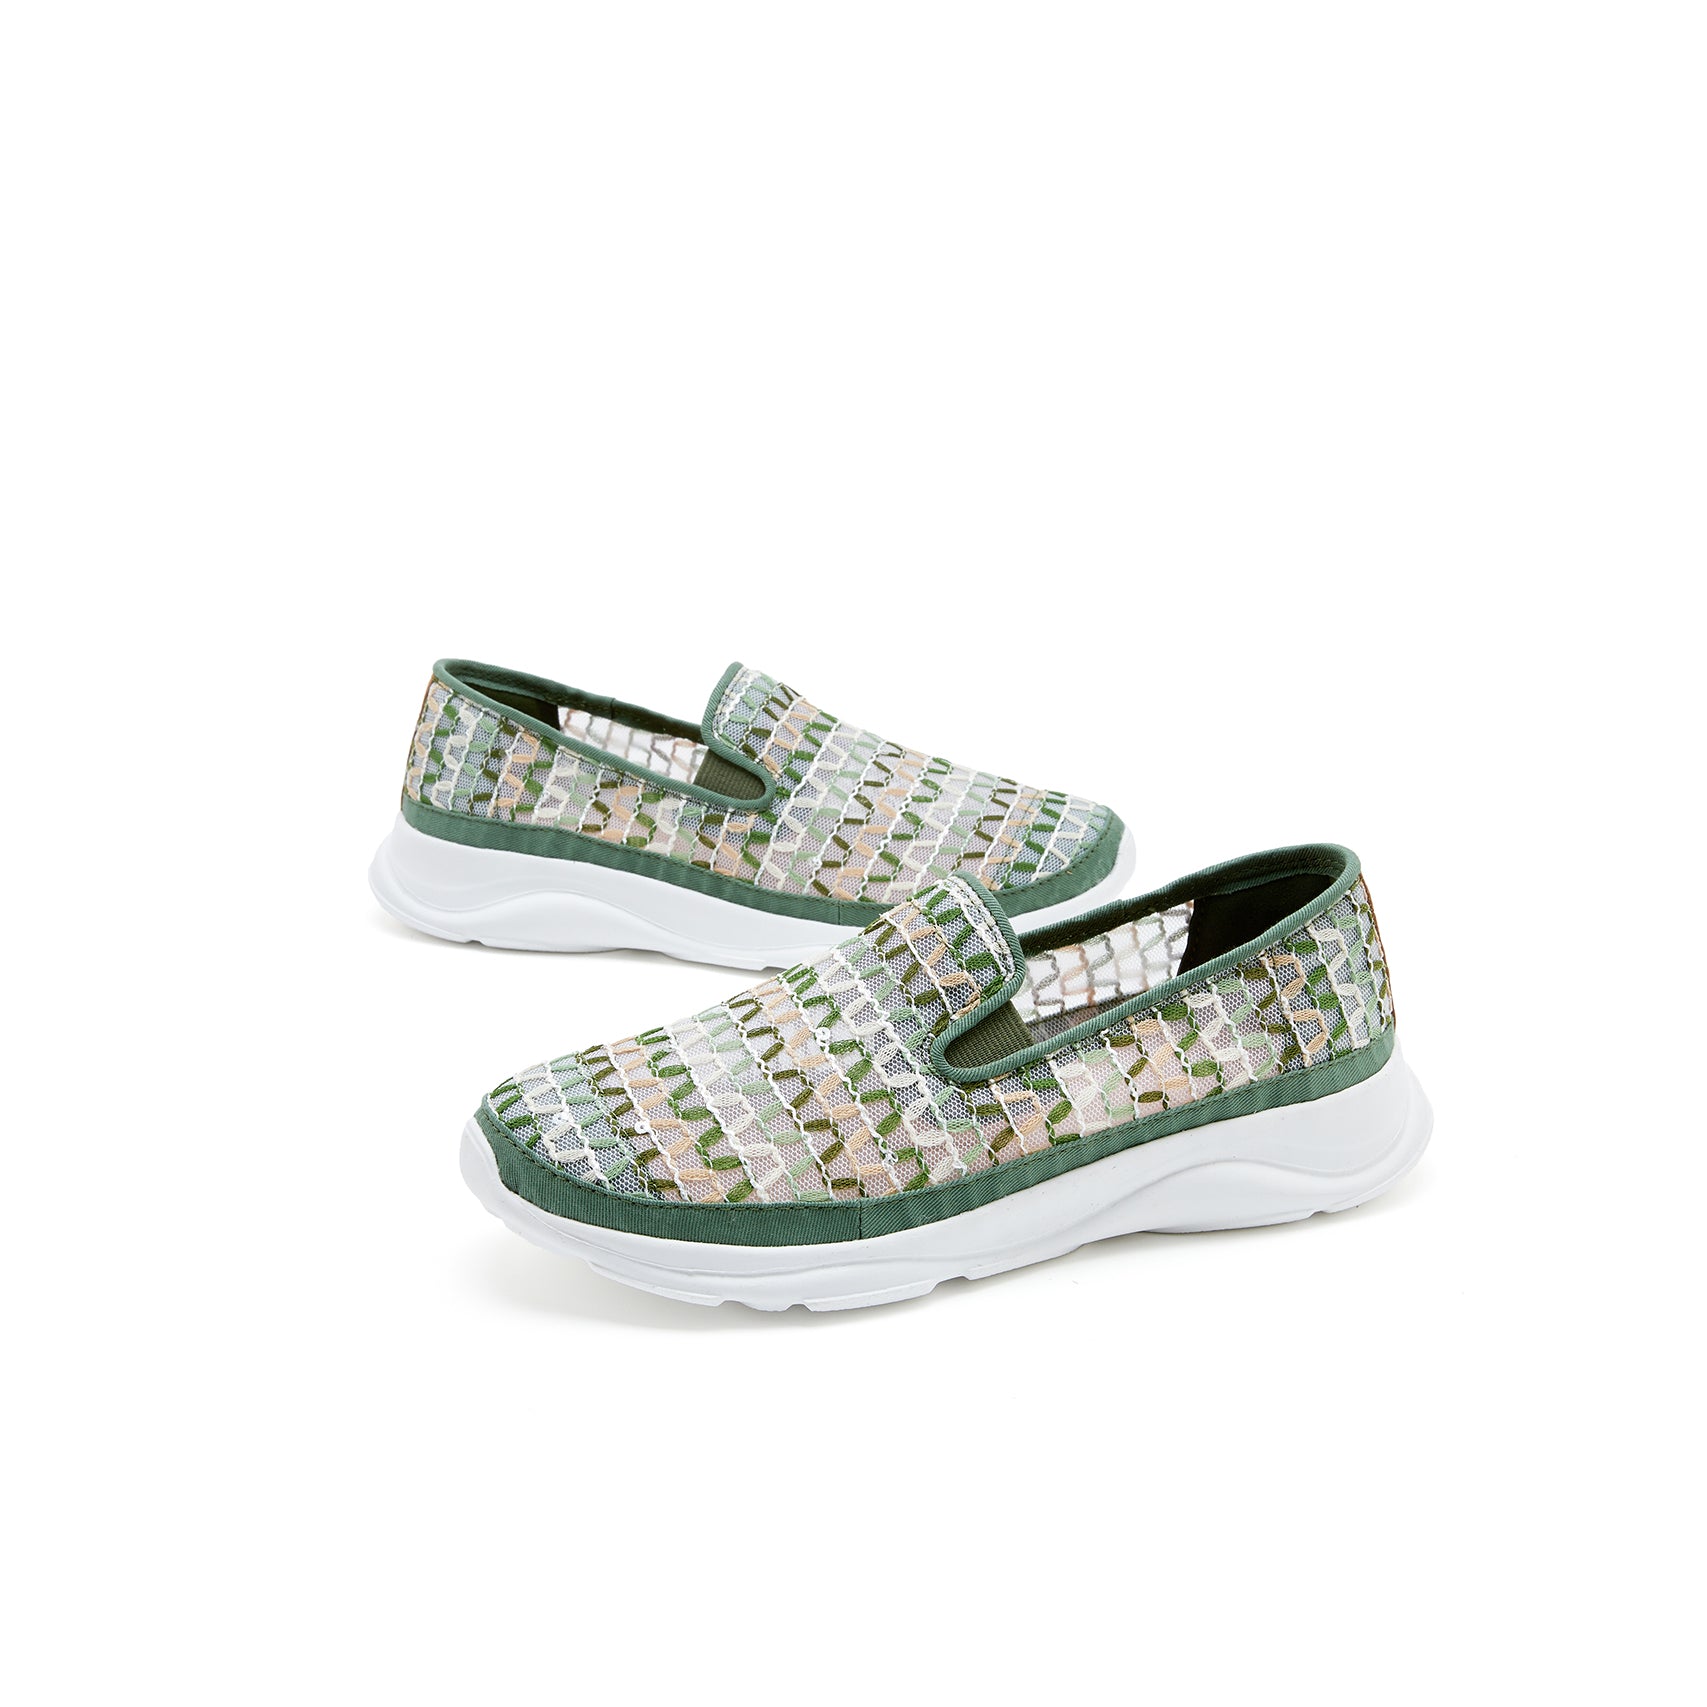 JOY&MARIO Women’s Slip-On Mesh Loafers in Green-78380W